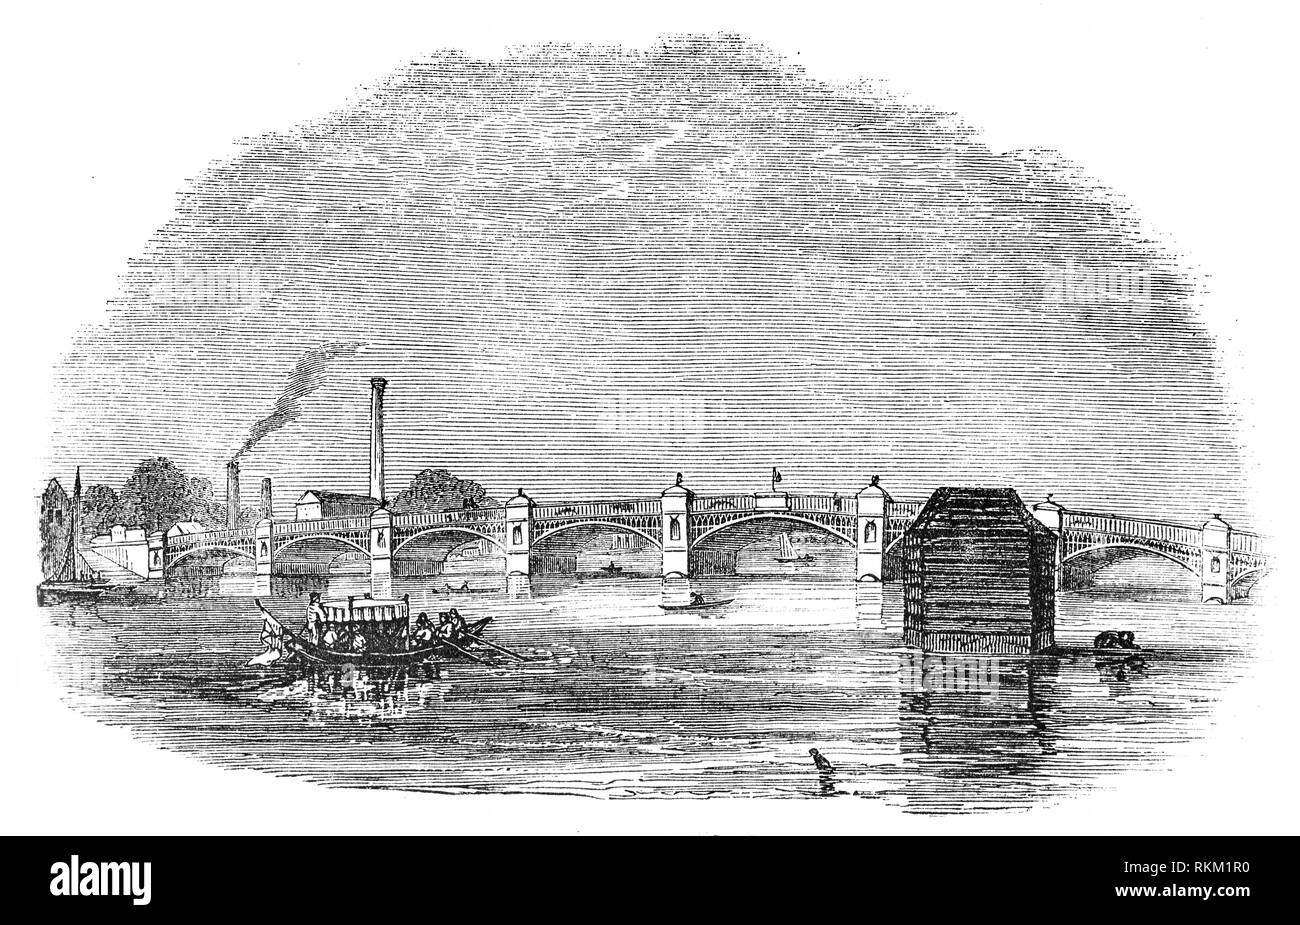 Il vecchio ponte Vauxhall attraversato il fiume Tamigi tra Vauxhall sulla banca del sud e Pimlico sulla riva nord. Costruito sul sito di un ex traghetto fu costruito tra il 1809 e il 1816. John Rennie è stato commissionato per la progettazione e la costruzione di un nuovo ponte in pietra, ma a seguito di difficoltà finanziarie ha presentato un nuovo design per un ponte in ferro, un piano che era stata respinta. Iniziò la costruzione di un ponte in ferro progettata da Samuel Bentham, ma il suo design è stato abbandonato per la seconda volta fino a quando James Walker, scozzese, ingegnere civile, è stato nominato per la progettazione e la costruzione del primo ponte di ferro attraverso il Tamigi. Foto Stock